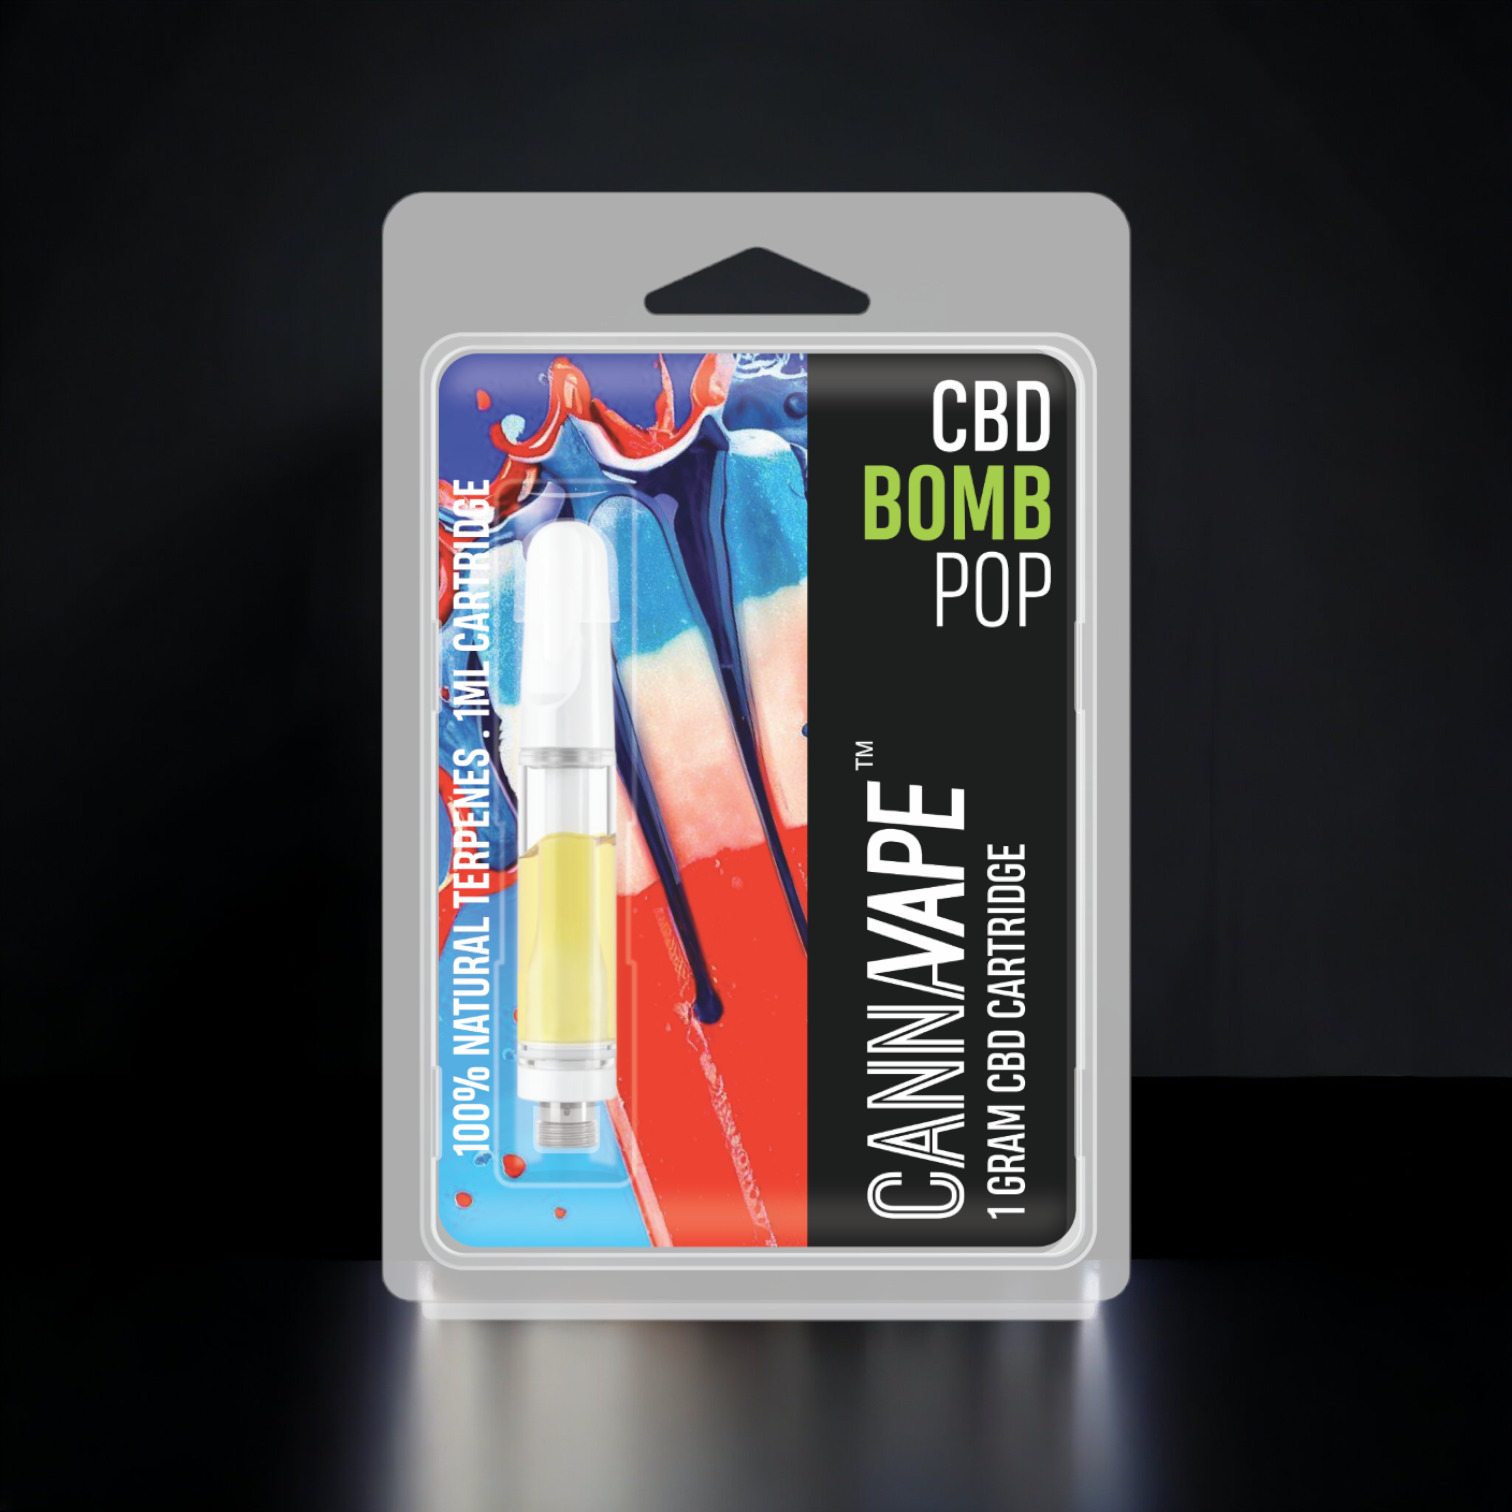 Bomb Pop CBD Vape Cartridge